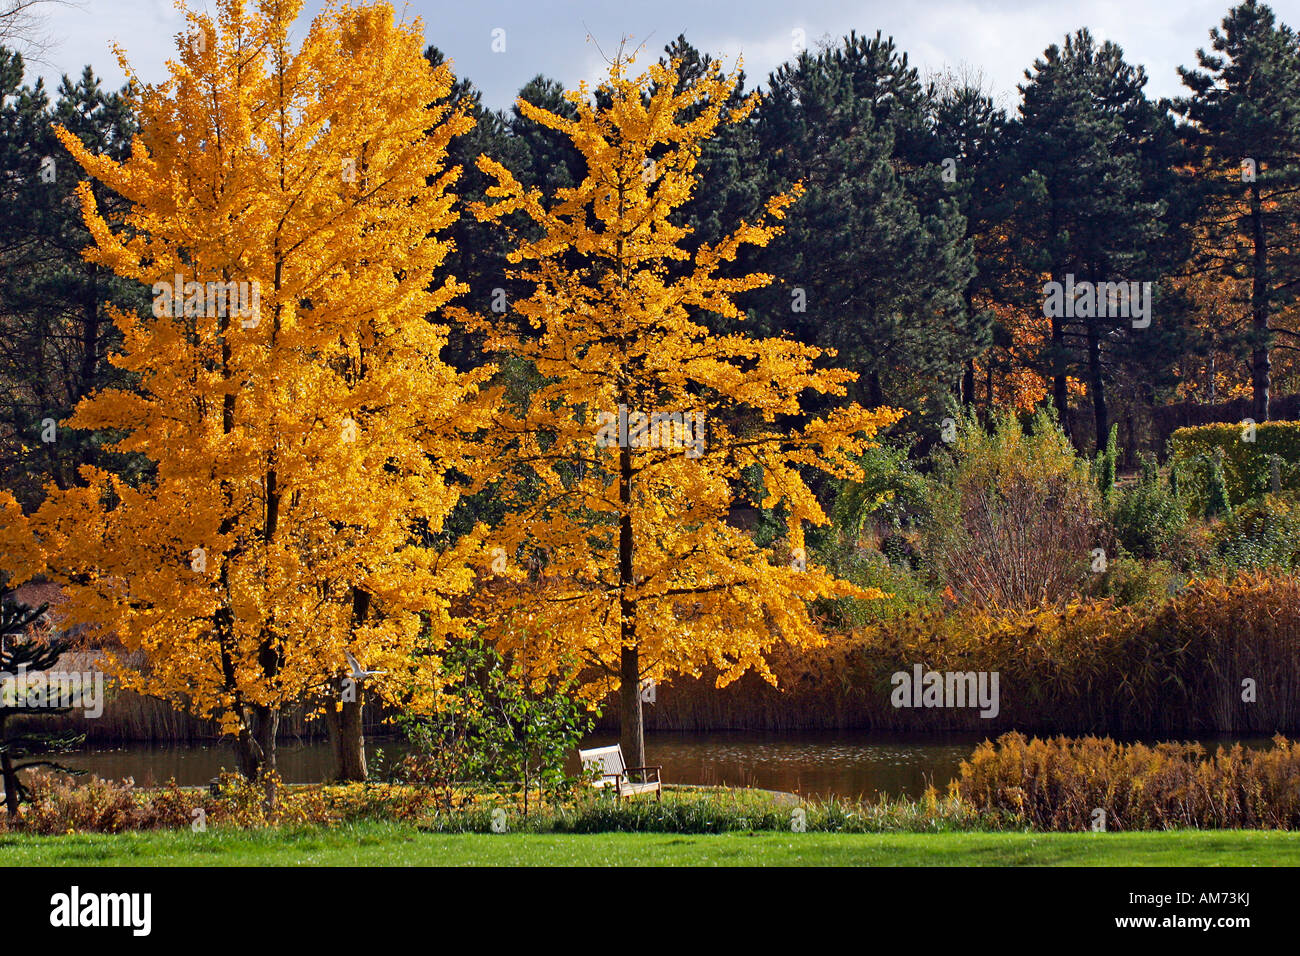 Ginkgo Bäume - tausend-Baum - Blätter im Herbst Farben - gelb Laub (Ginkgo Biloba) Stockfoto